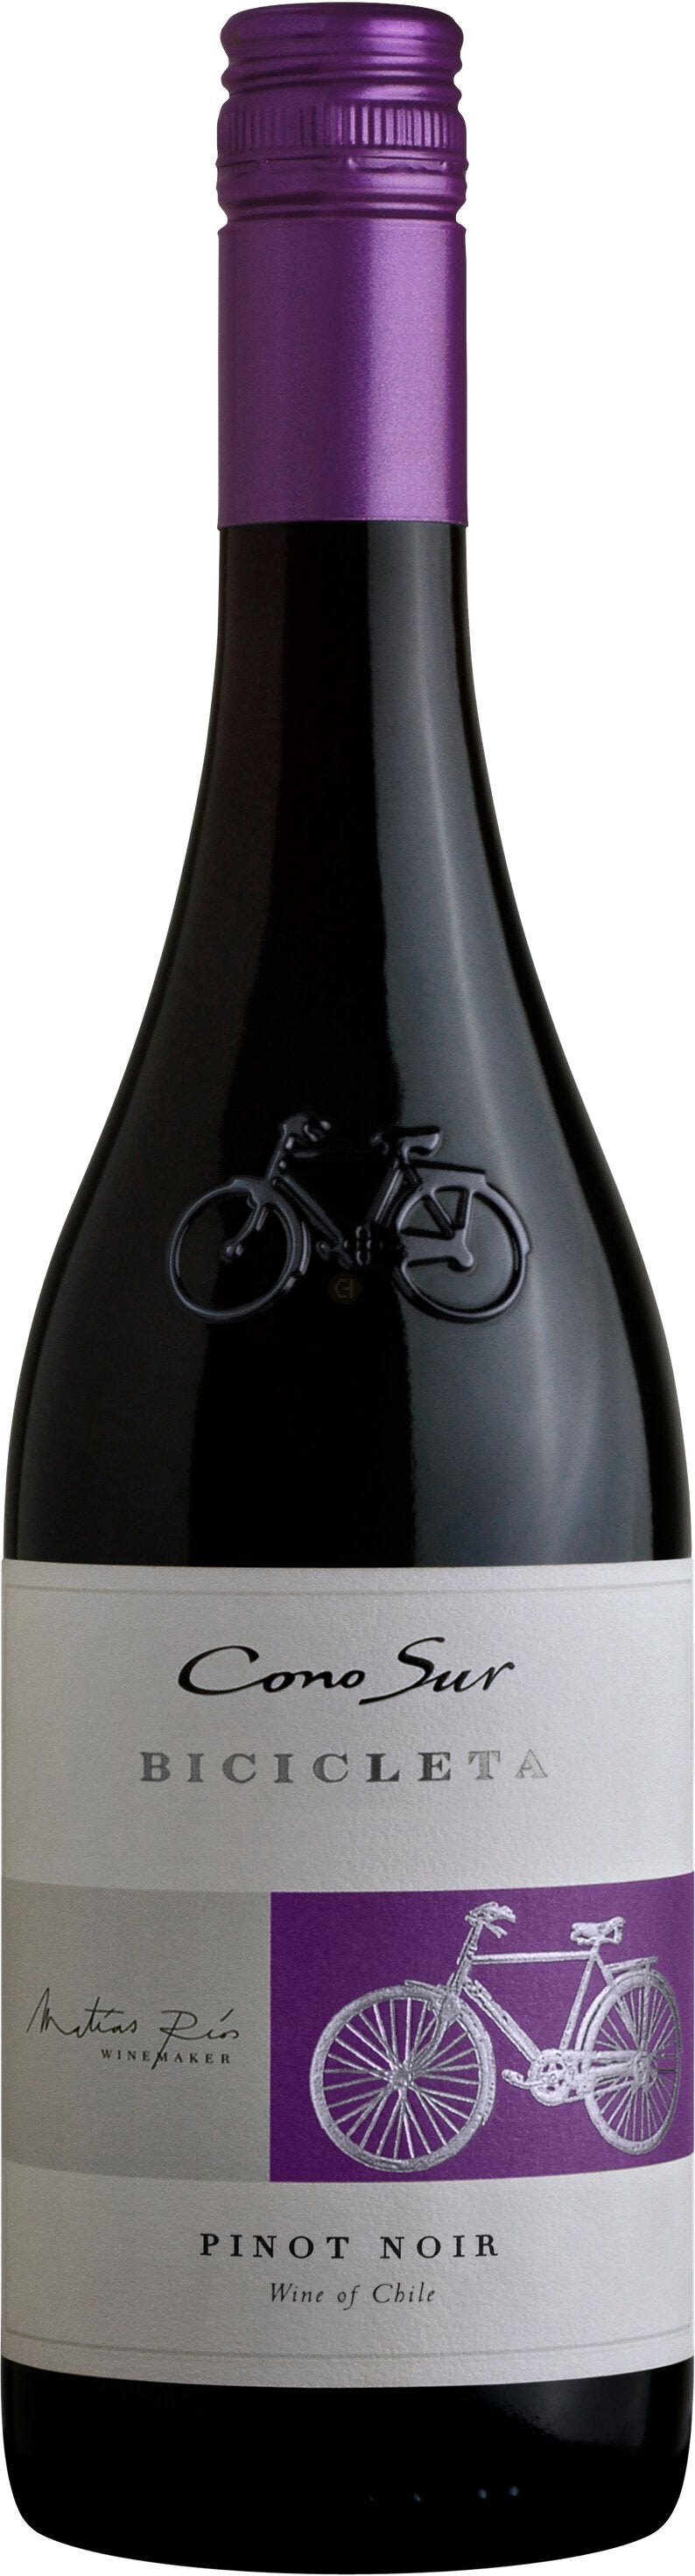 Cono Sur Bicicleta Reserva Pinot Noir Chile